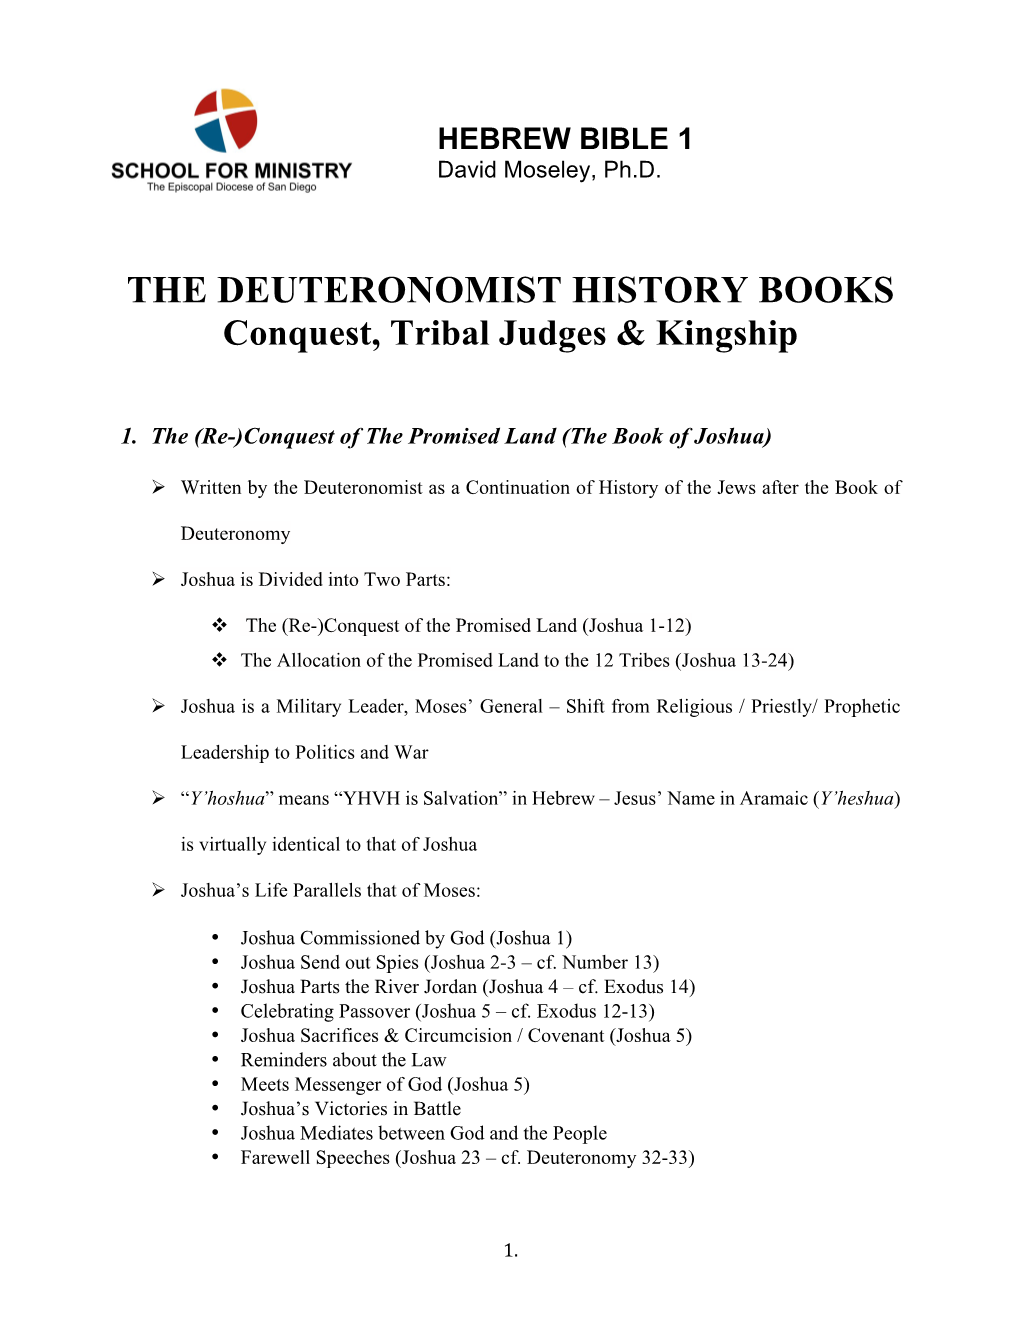 THE DEUTERONOMIST HISTORY BOOKS Conquest, Tribal Judges & Kingship